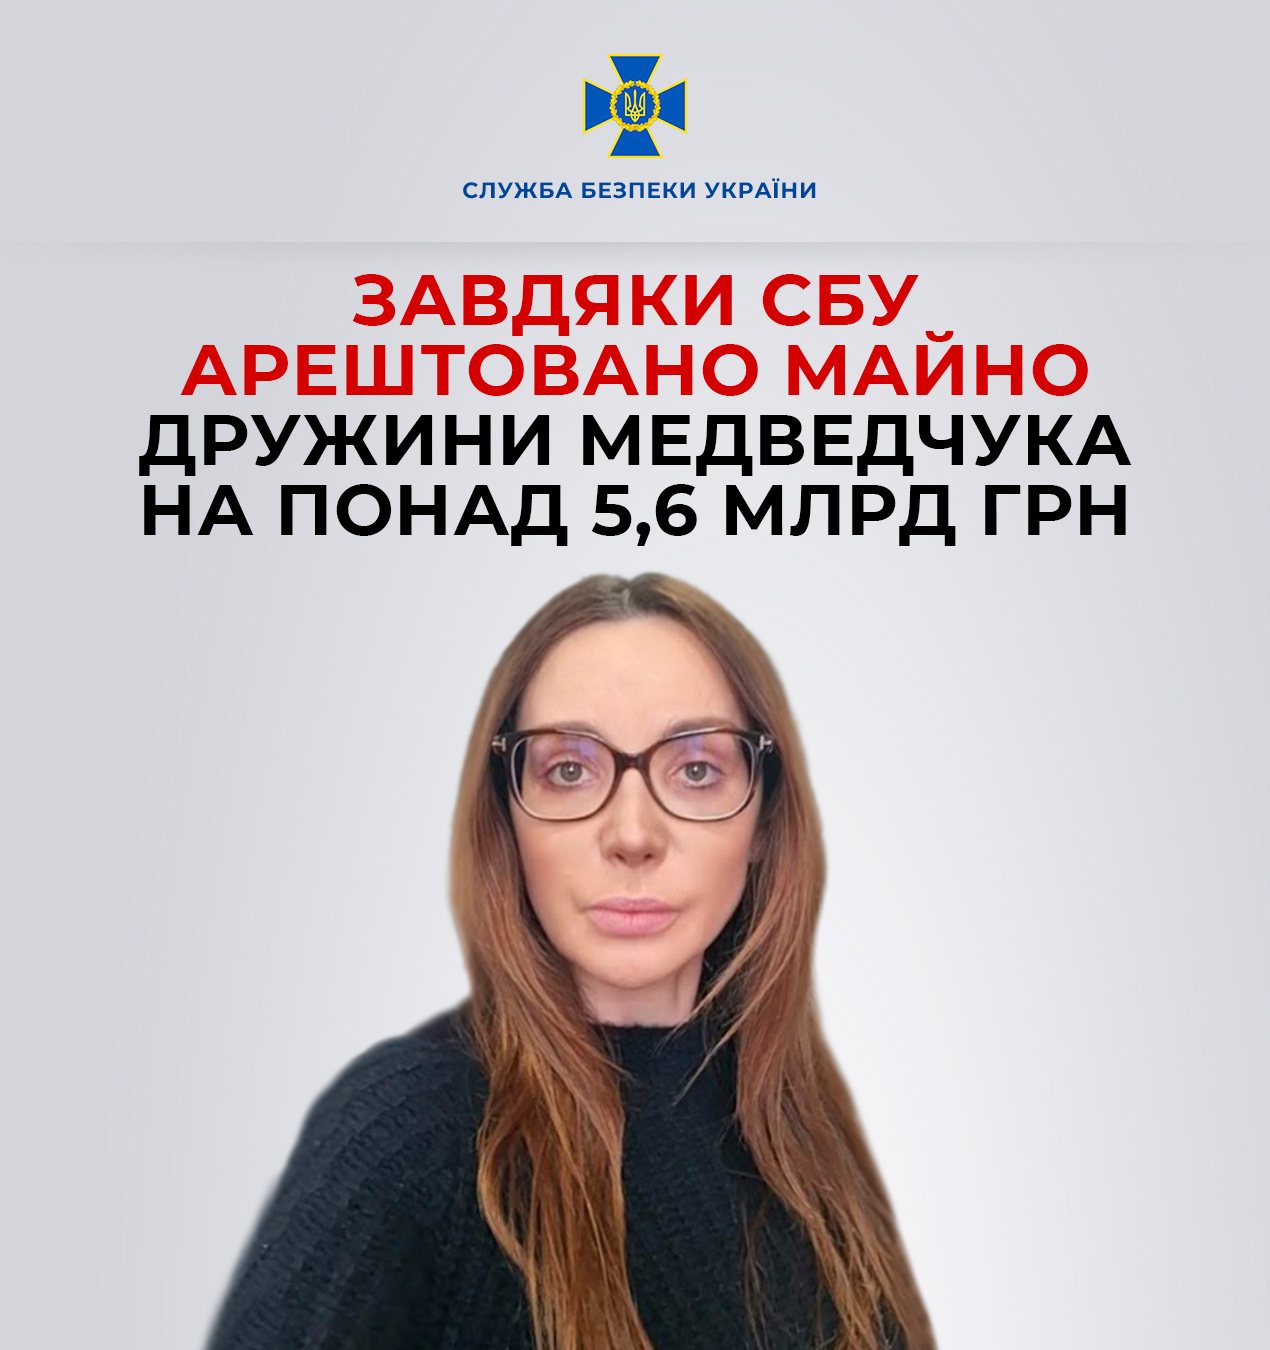 Завдяки франківській СБУ суд арештував майно дружини Медведчука на понад 5,6 млрд грн